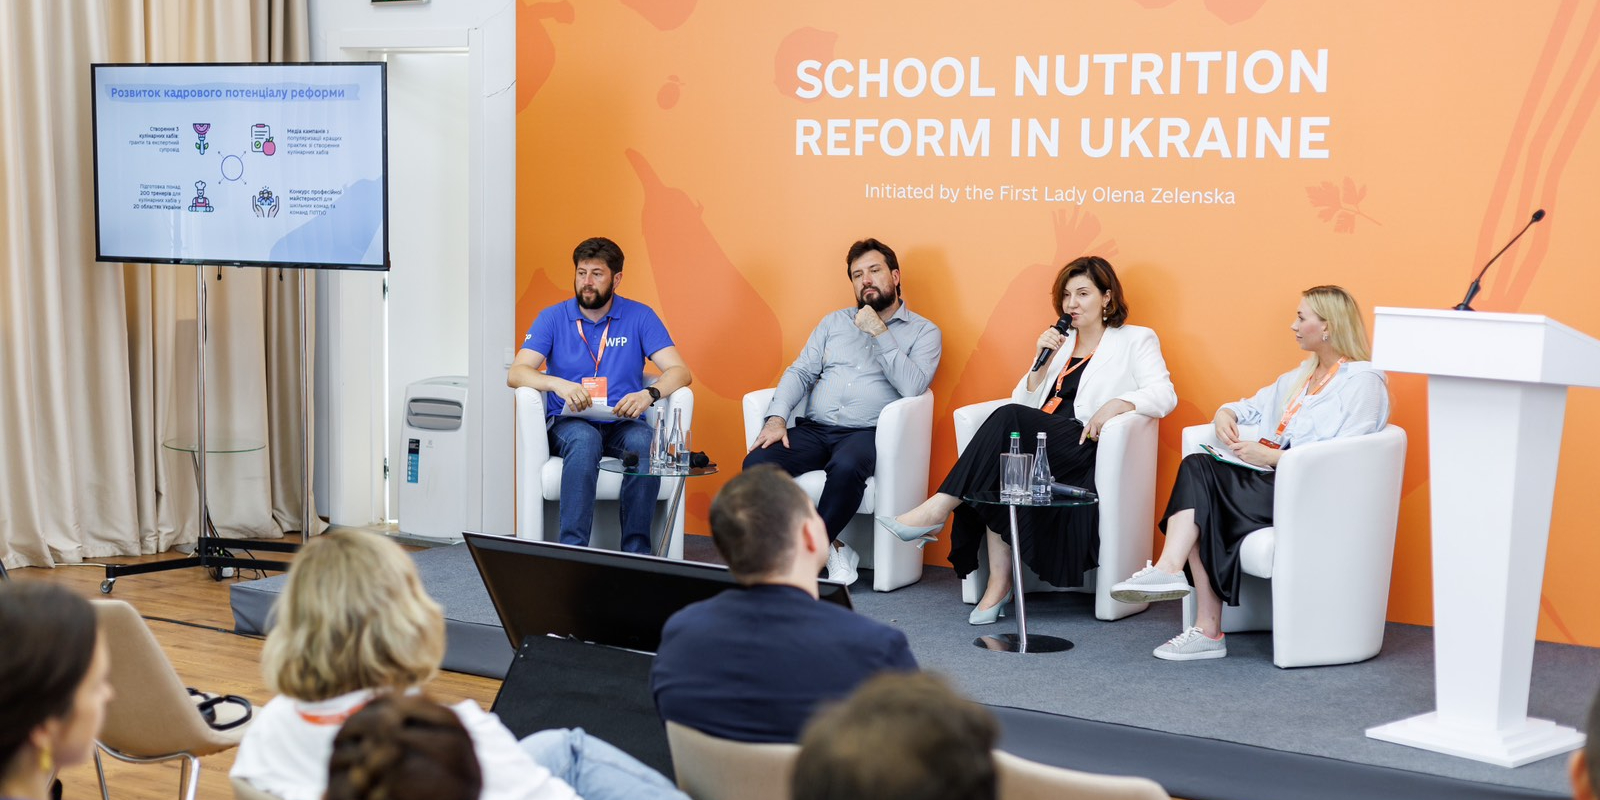 Результати реформи шкільного харчування обговорили з міжнародними партнерами

